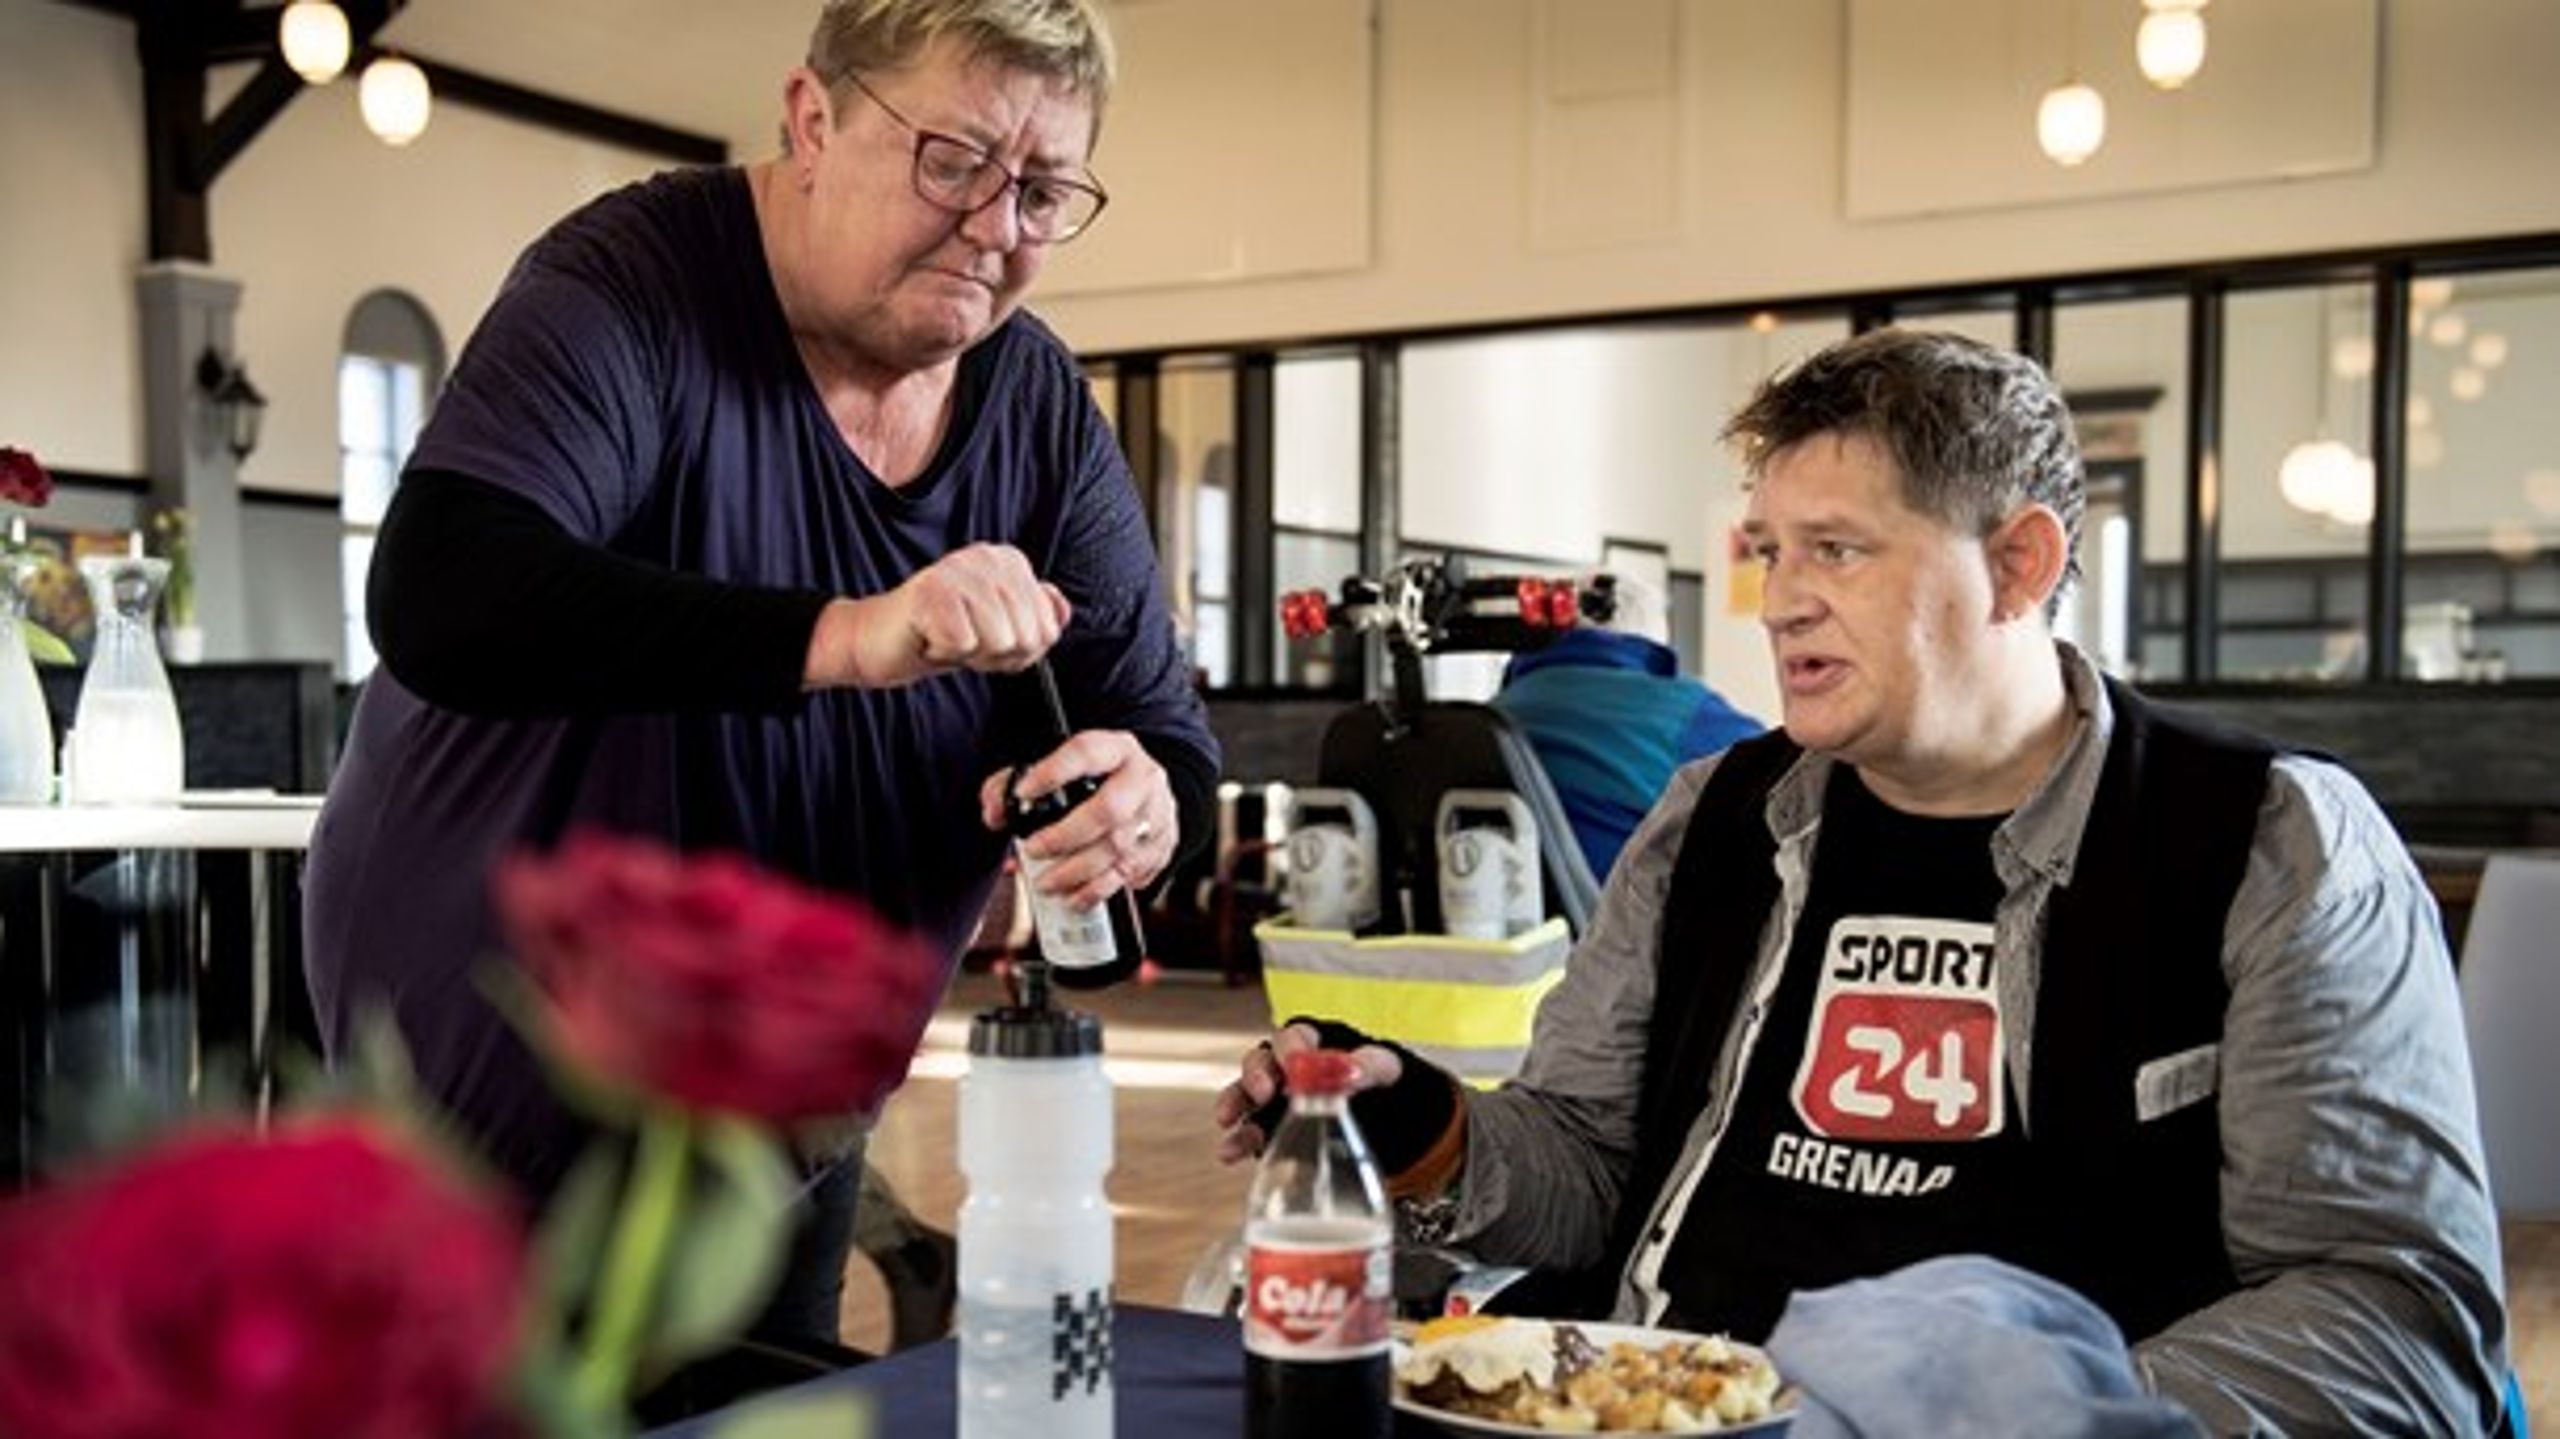 Frivillige giver et væsentligt bidrag til velfærden i Danmark, mener regeringen. Billedet her er fra værestedet for socialt udsatte, Café Grenaa.